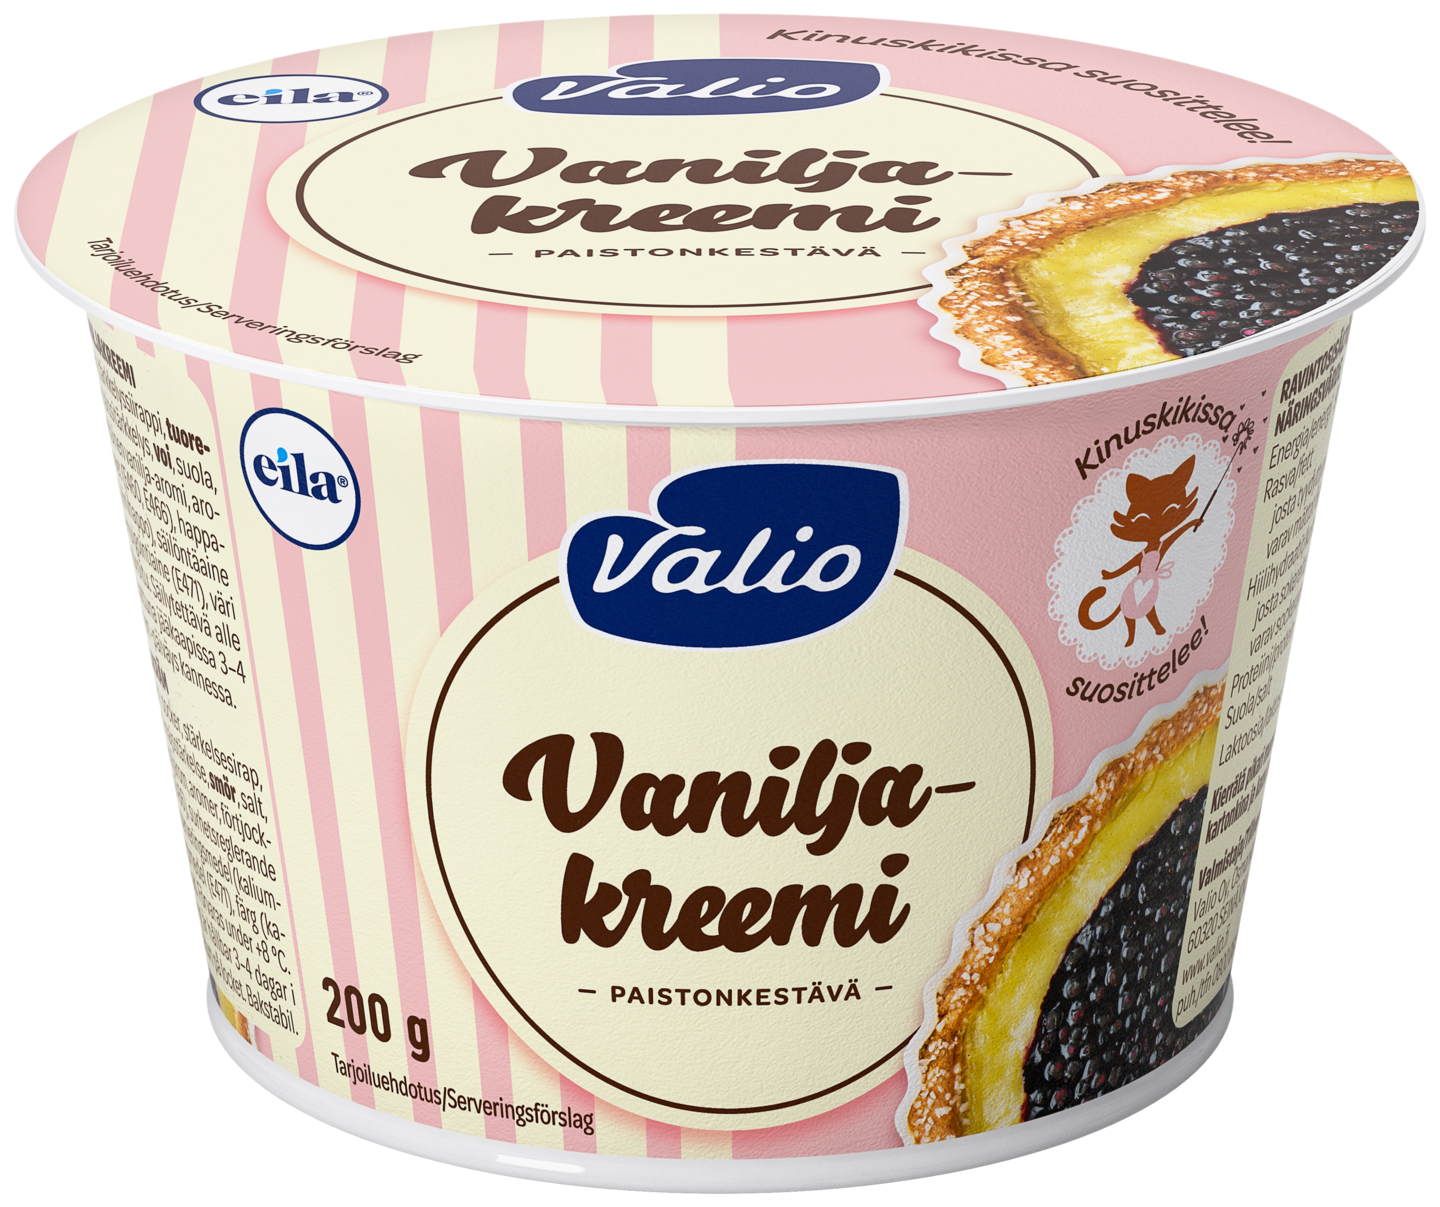 Valio vaniljakreemi 200g laktoositon